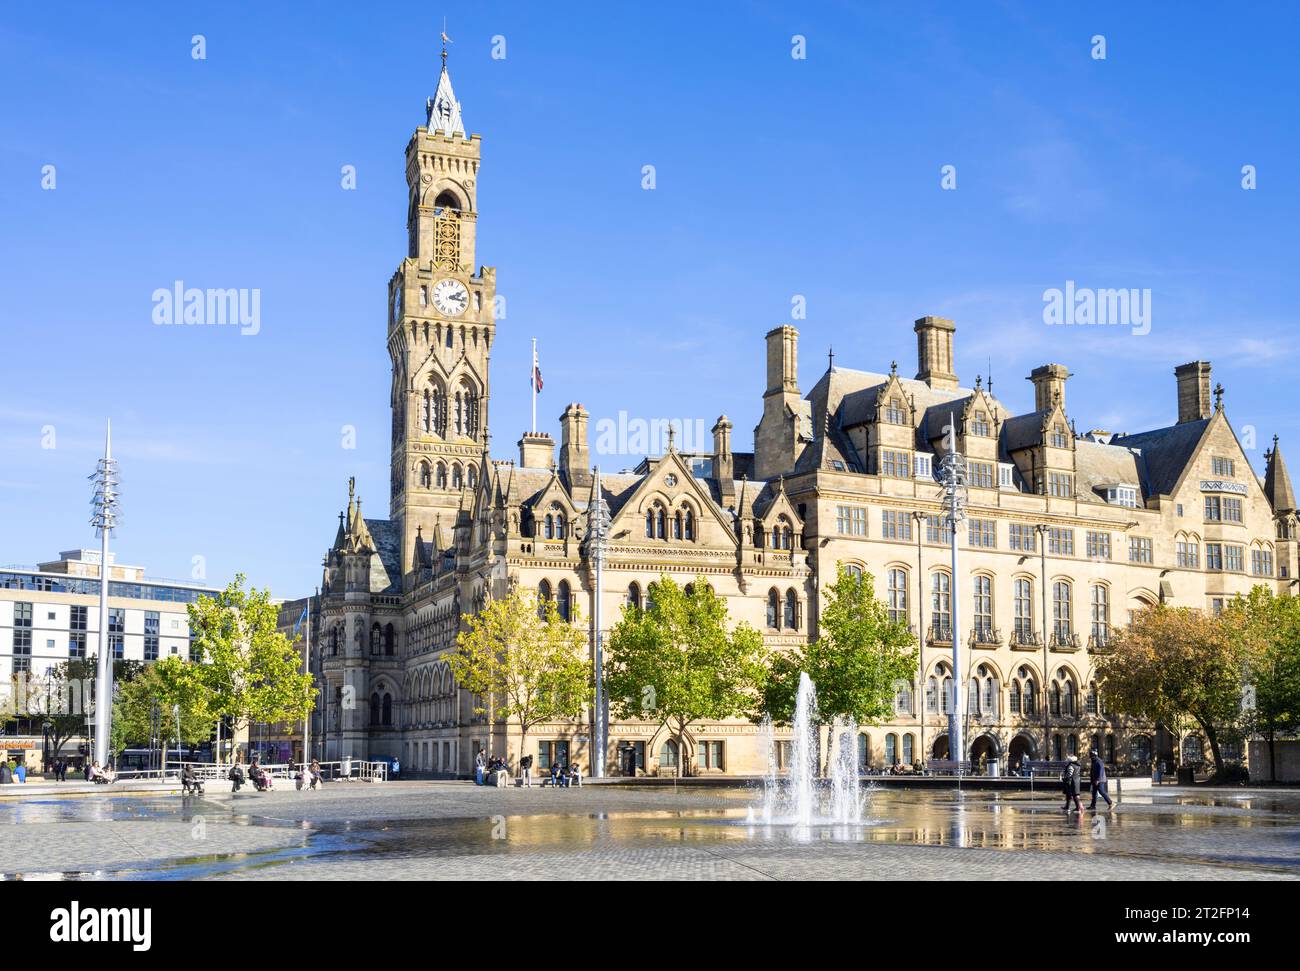 La torre dell'orologio del municipio di Bradford o il municipio di Bradford nel centro di Bradford Centenary Square con fontane Bradford Yorkshire Inghilterra Regno Unito GB Europa Foto Stock